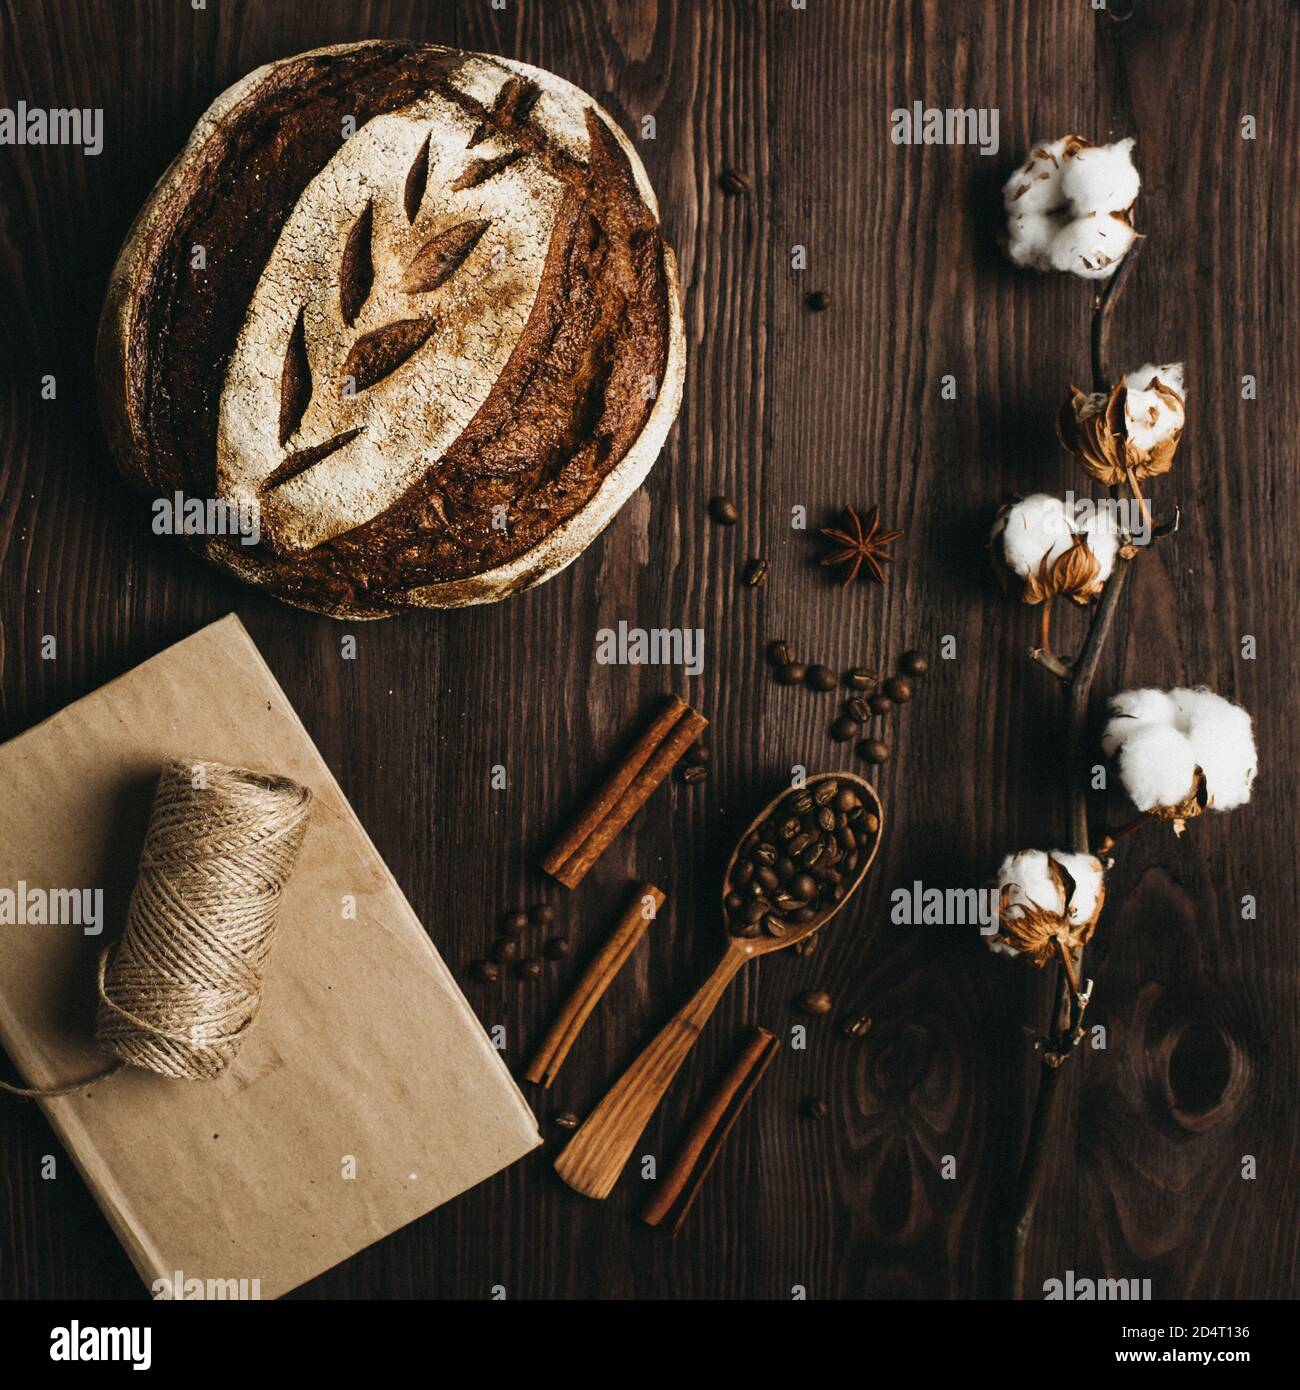 Vue de dessus du pain maison, des grains de café et une branche de laine de coton sur une table en bois. Banque D'Images